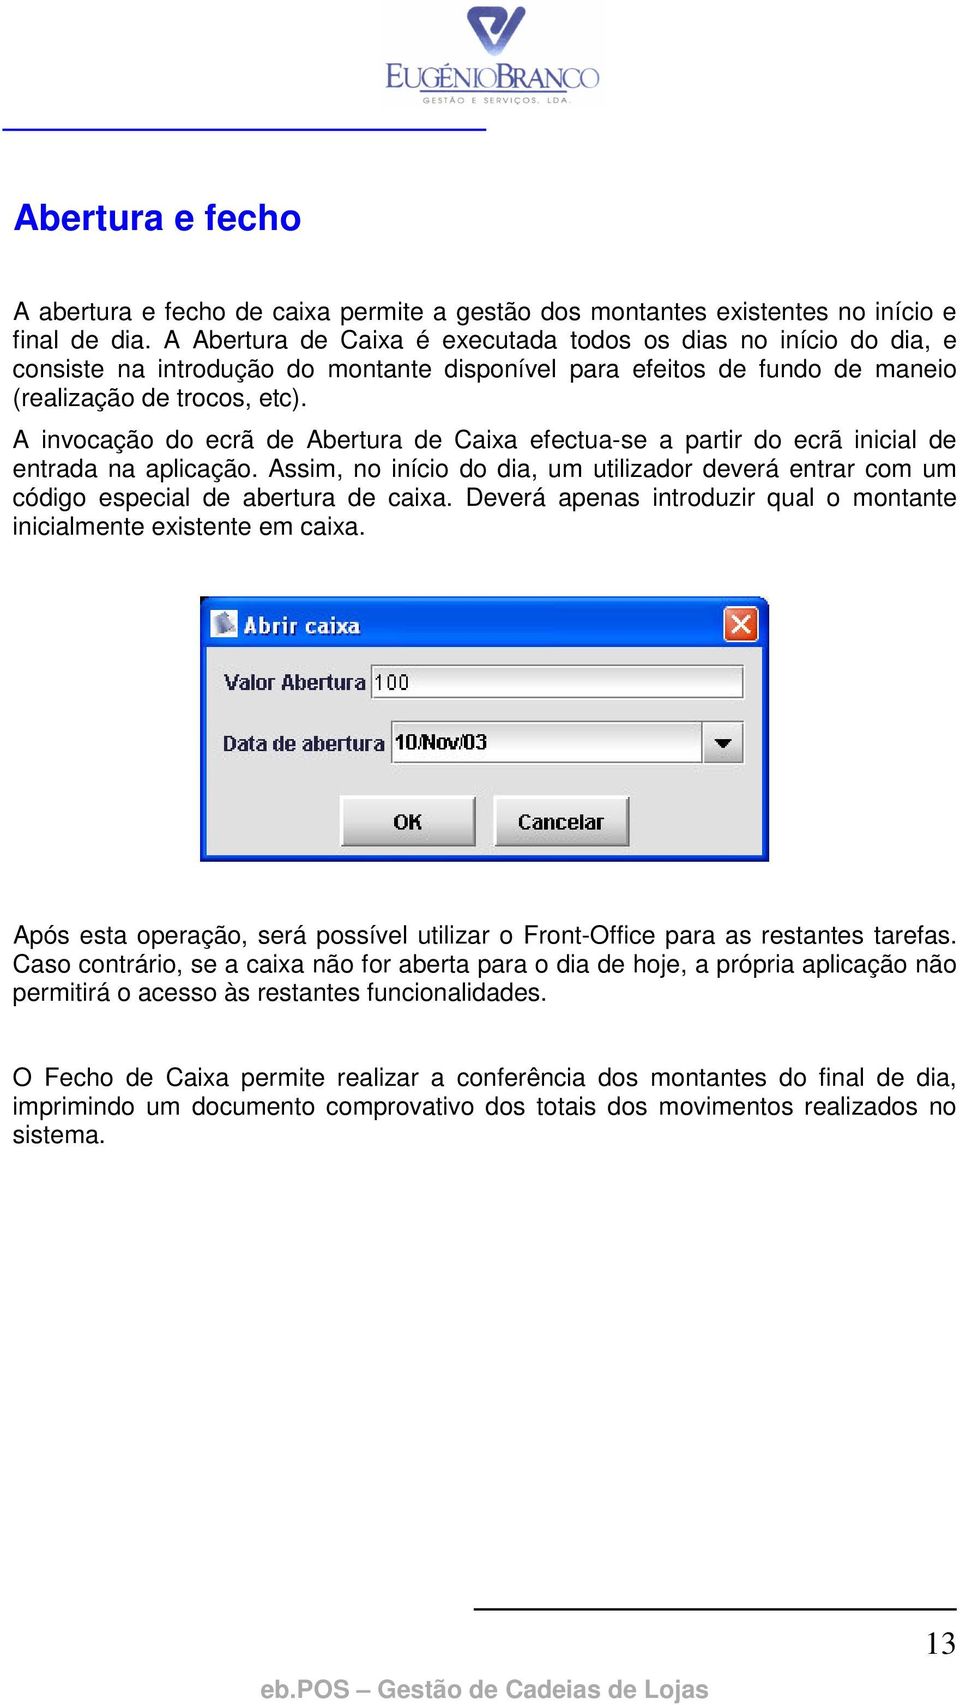 A invocação do ecrã de Abertura de Caixa efectua-se a partir do ecrã inicial de entrada na aplicação. Assim, no início do dia, um utilizador deverá entrar com um código especial de abertura de caixa.